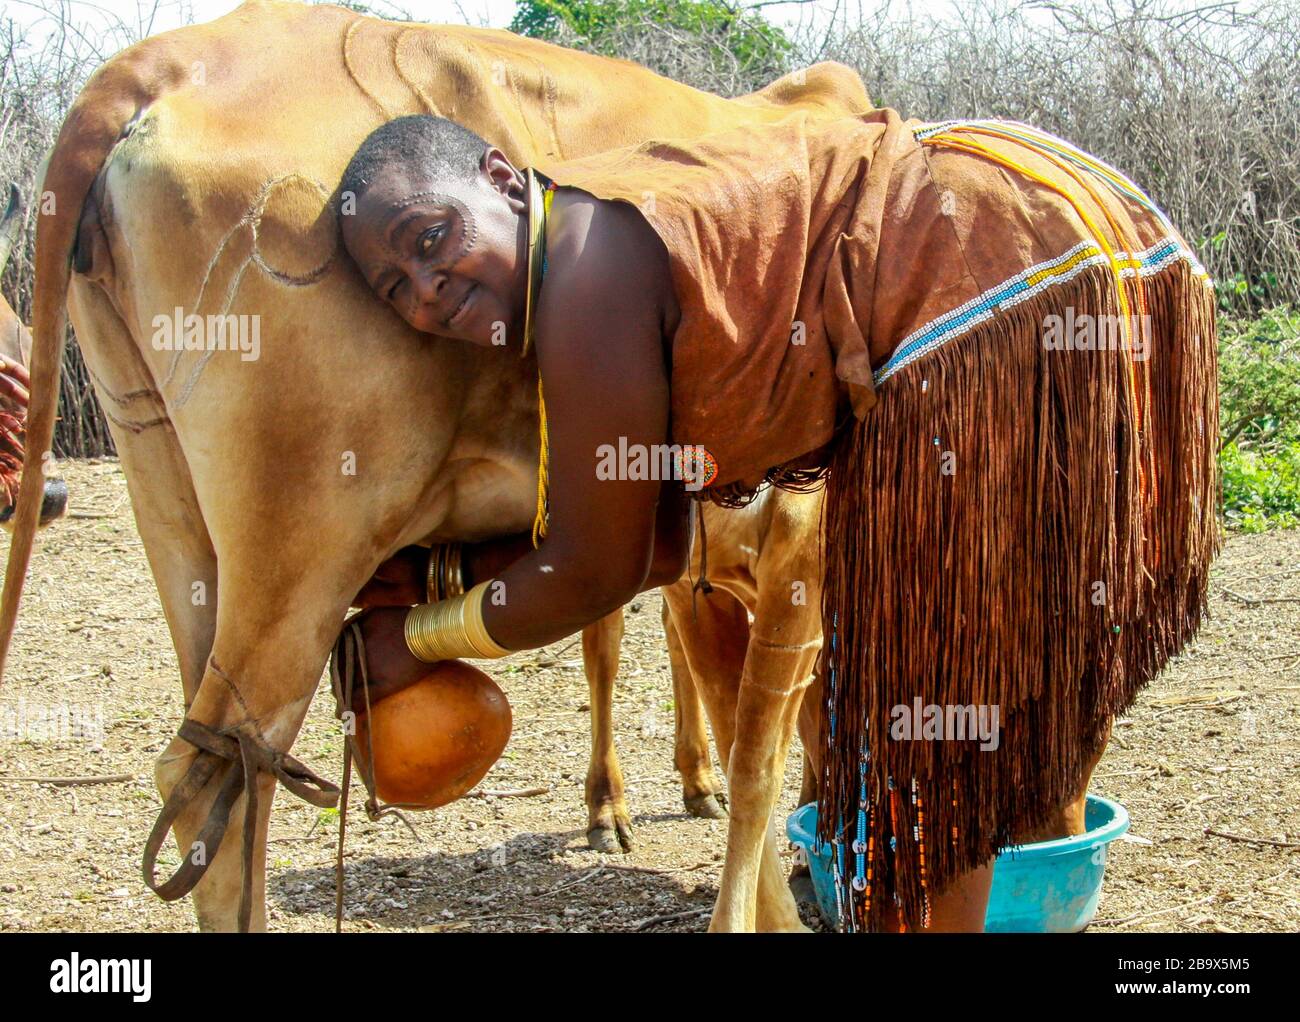 L'Afrique, la Tanzanie, des femmes de la tribu de Datoga (Datoga) en robe traditionnelle, laits une vache. Des cicatrices de beauté peuvent être vues autour de ses yeux Banque D'Images